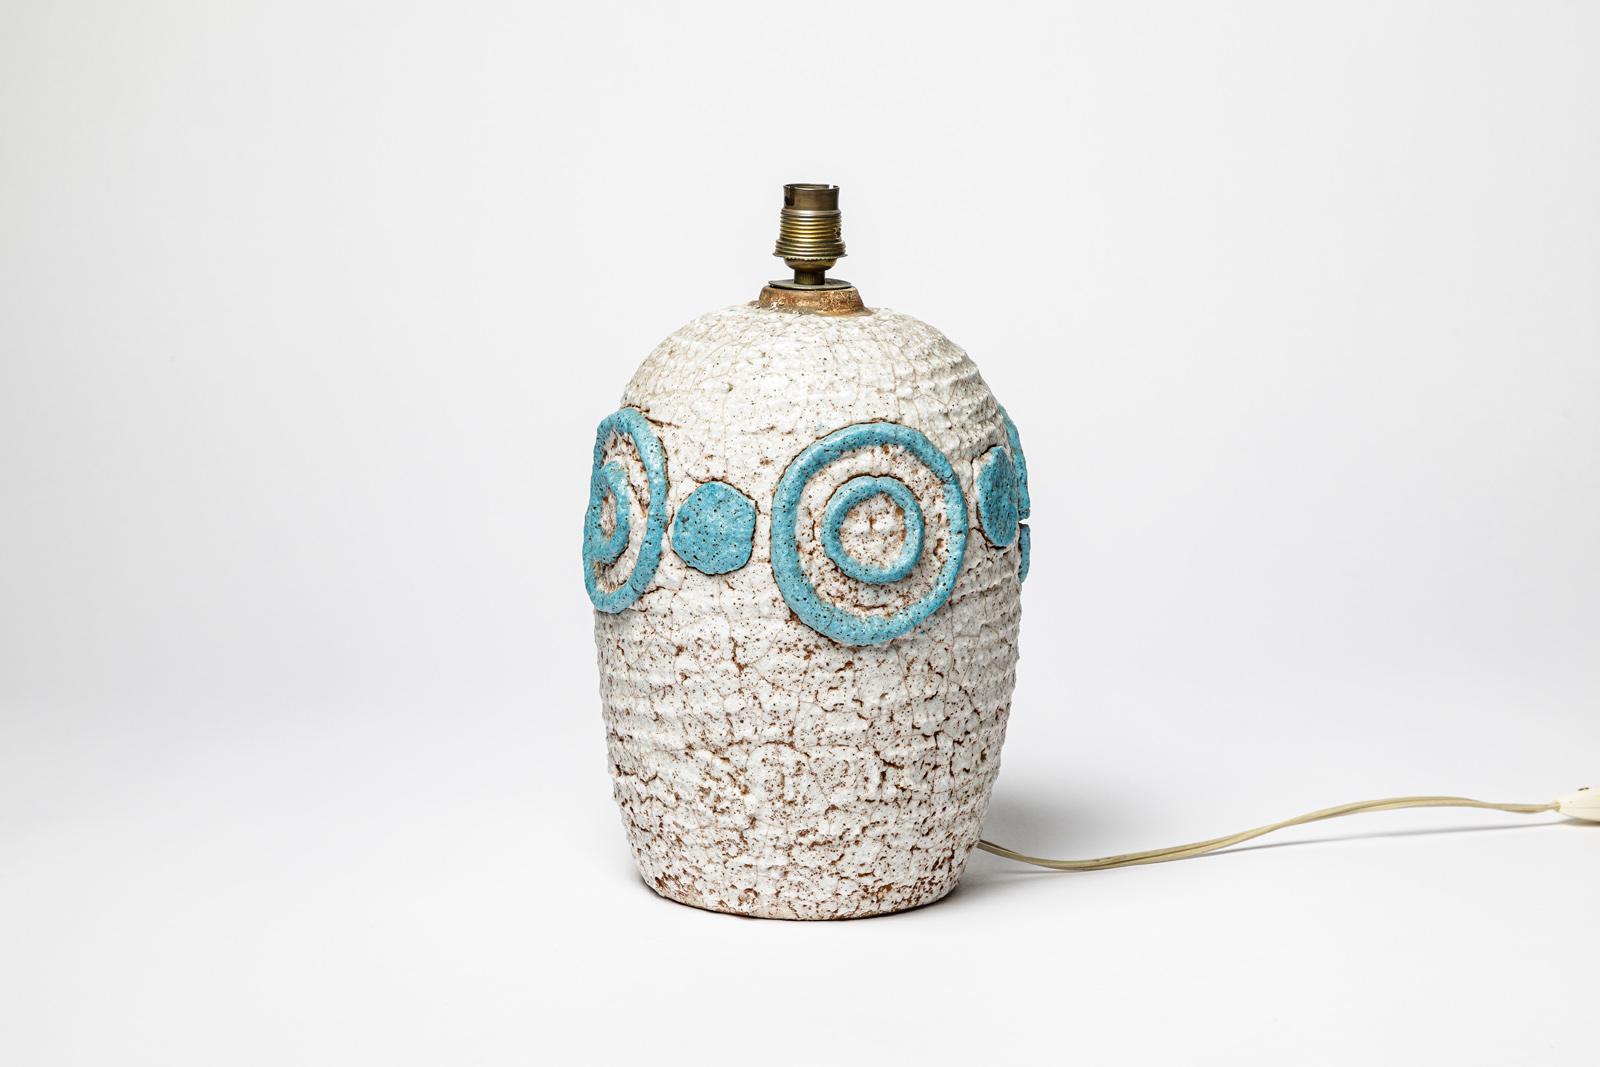 Nach dem Vorbild von Jean Besnard

original art deco keramik tischlampe

Weiße und blaue Spiralverzierung

ursprünglicher perfekter Zustand

Keramische Höhe 26 cm
Höhe mit elektrischer Anlage 30 cm
Groß 17 cm